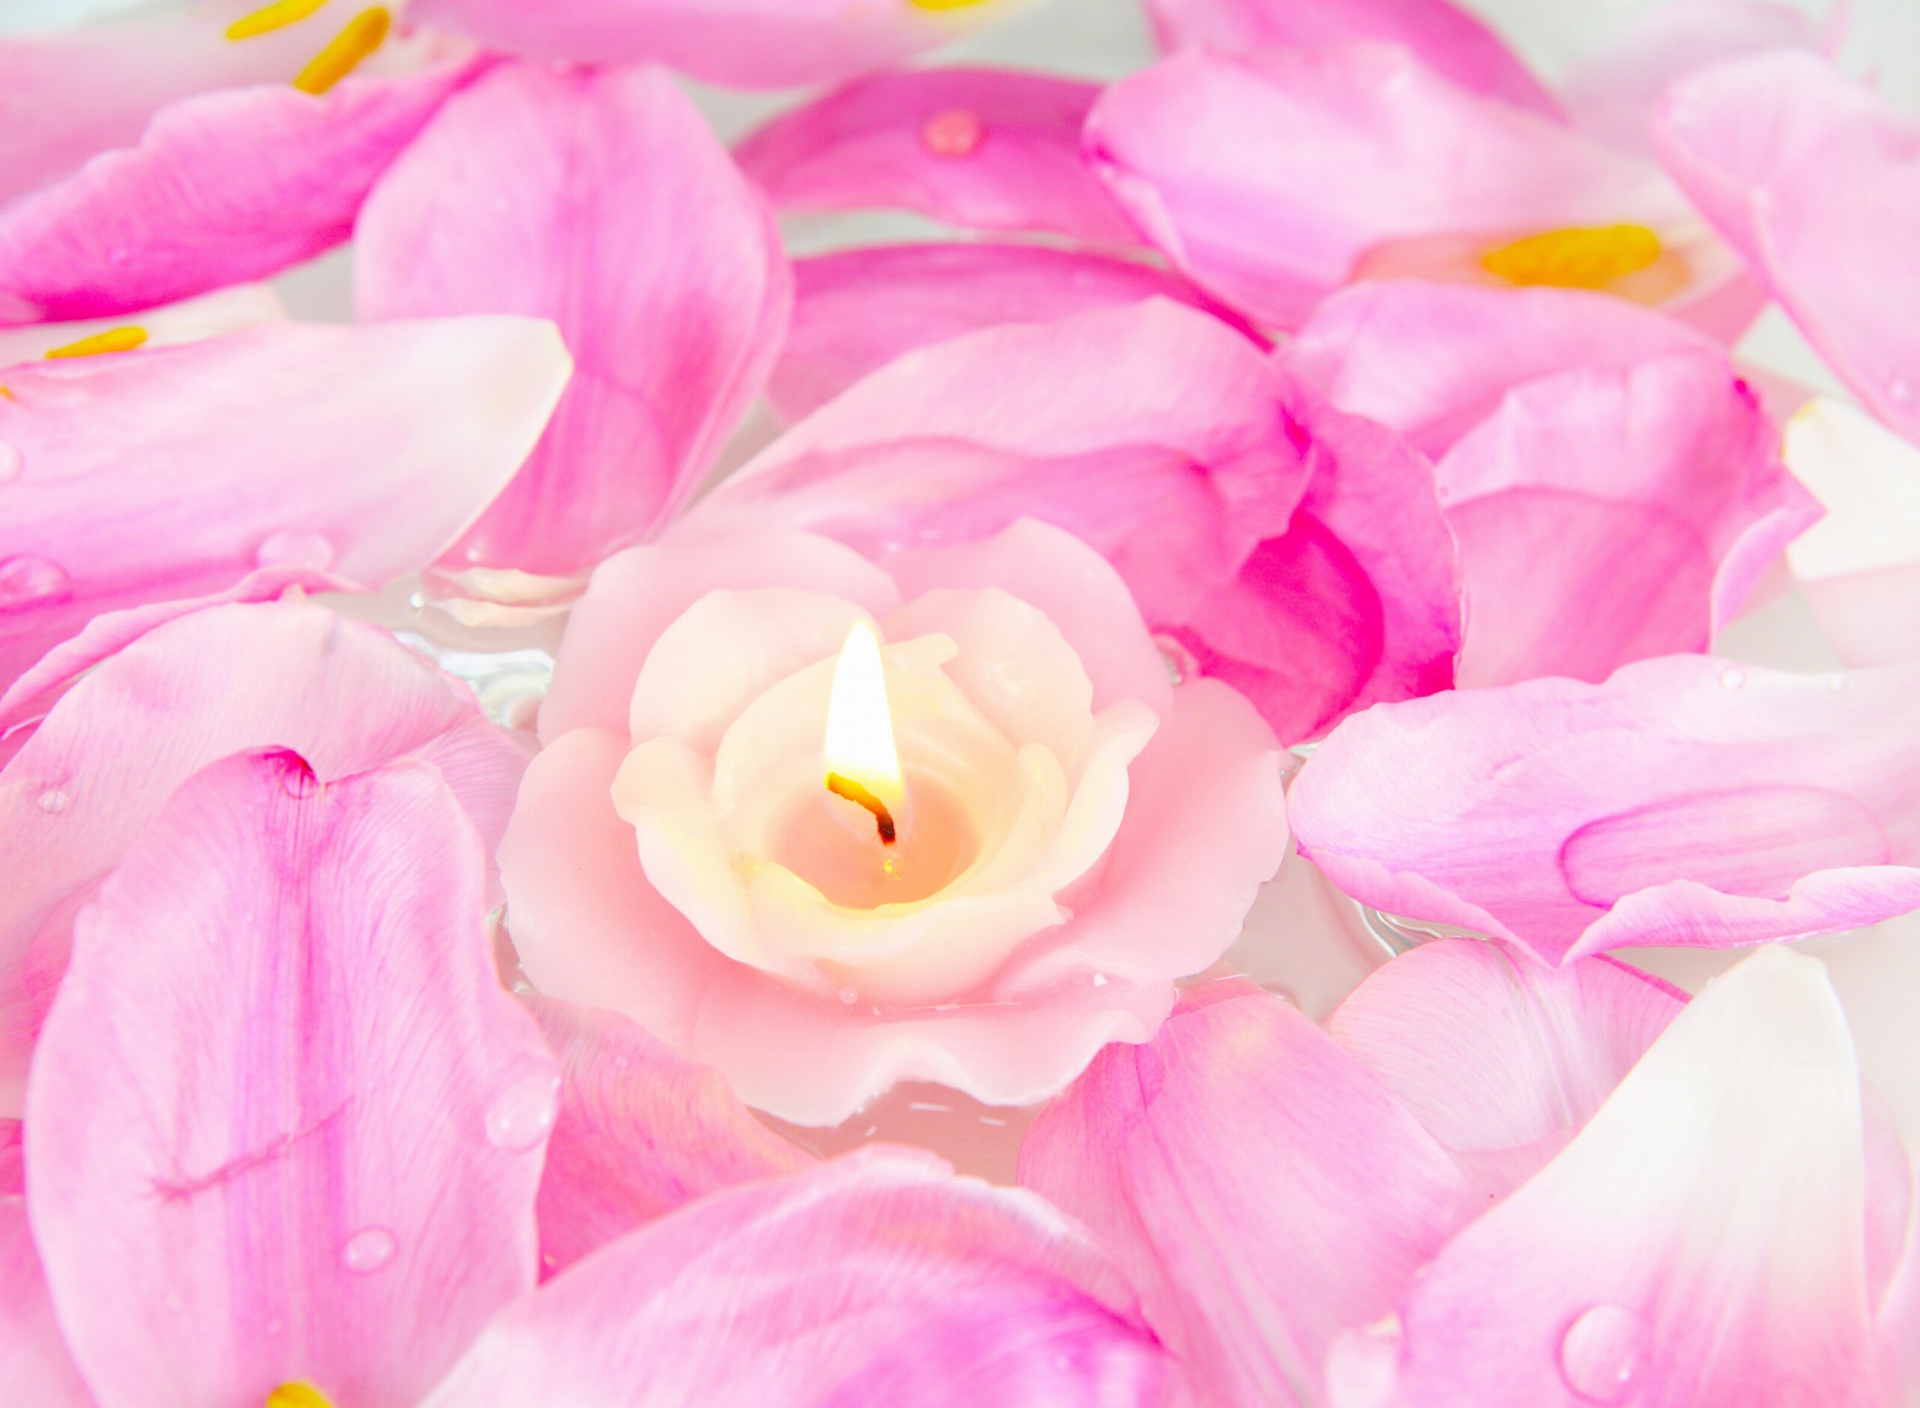 Candle on lotus petals screenshot #1 1920x1408